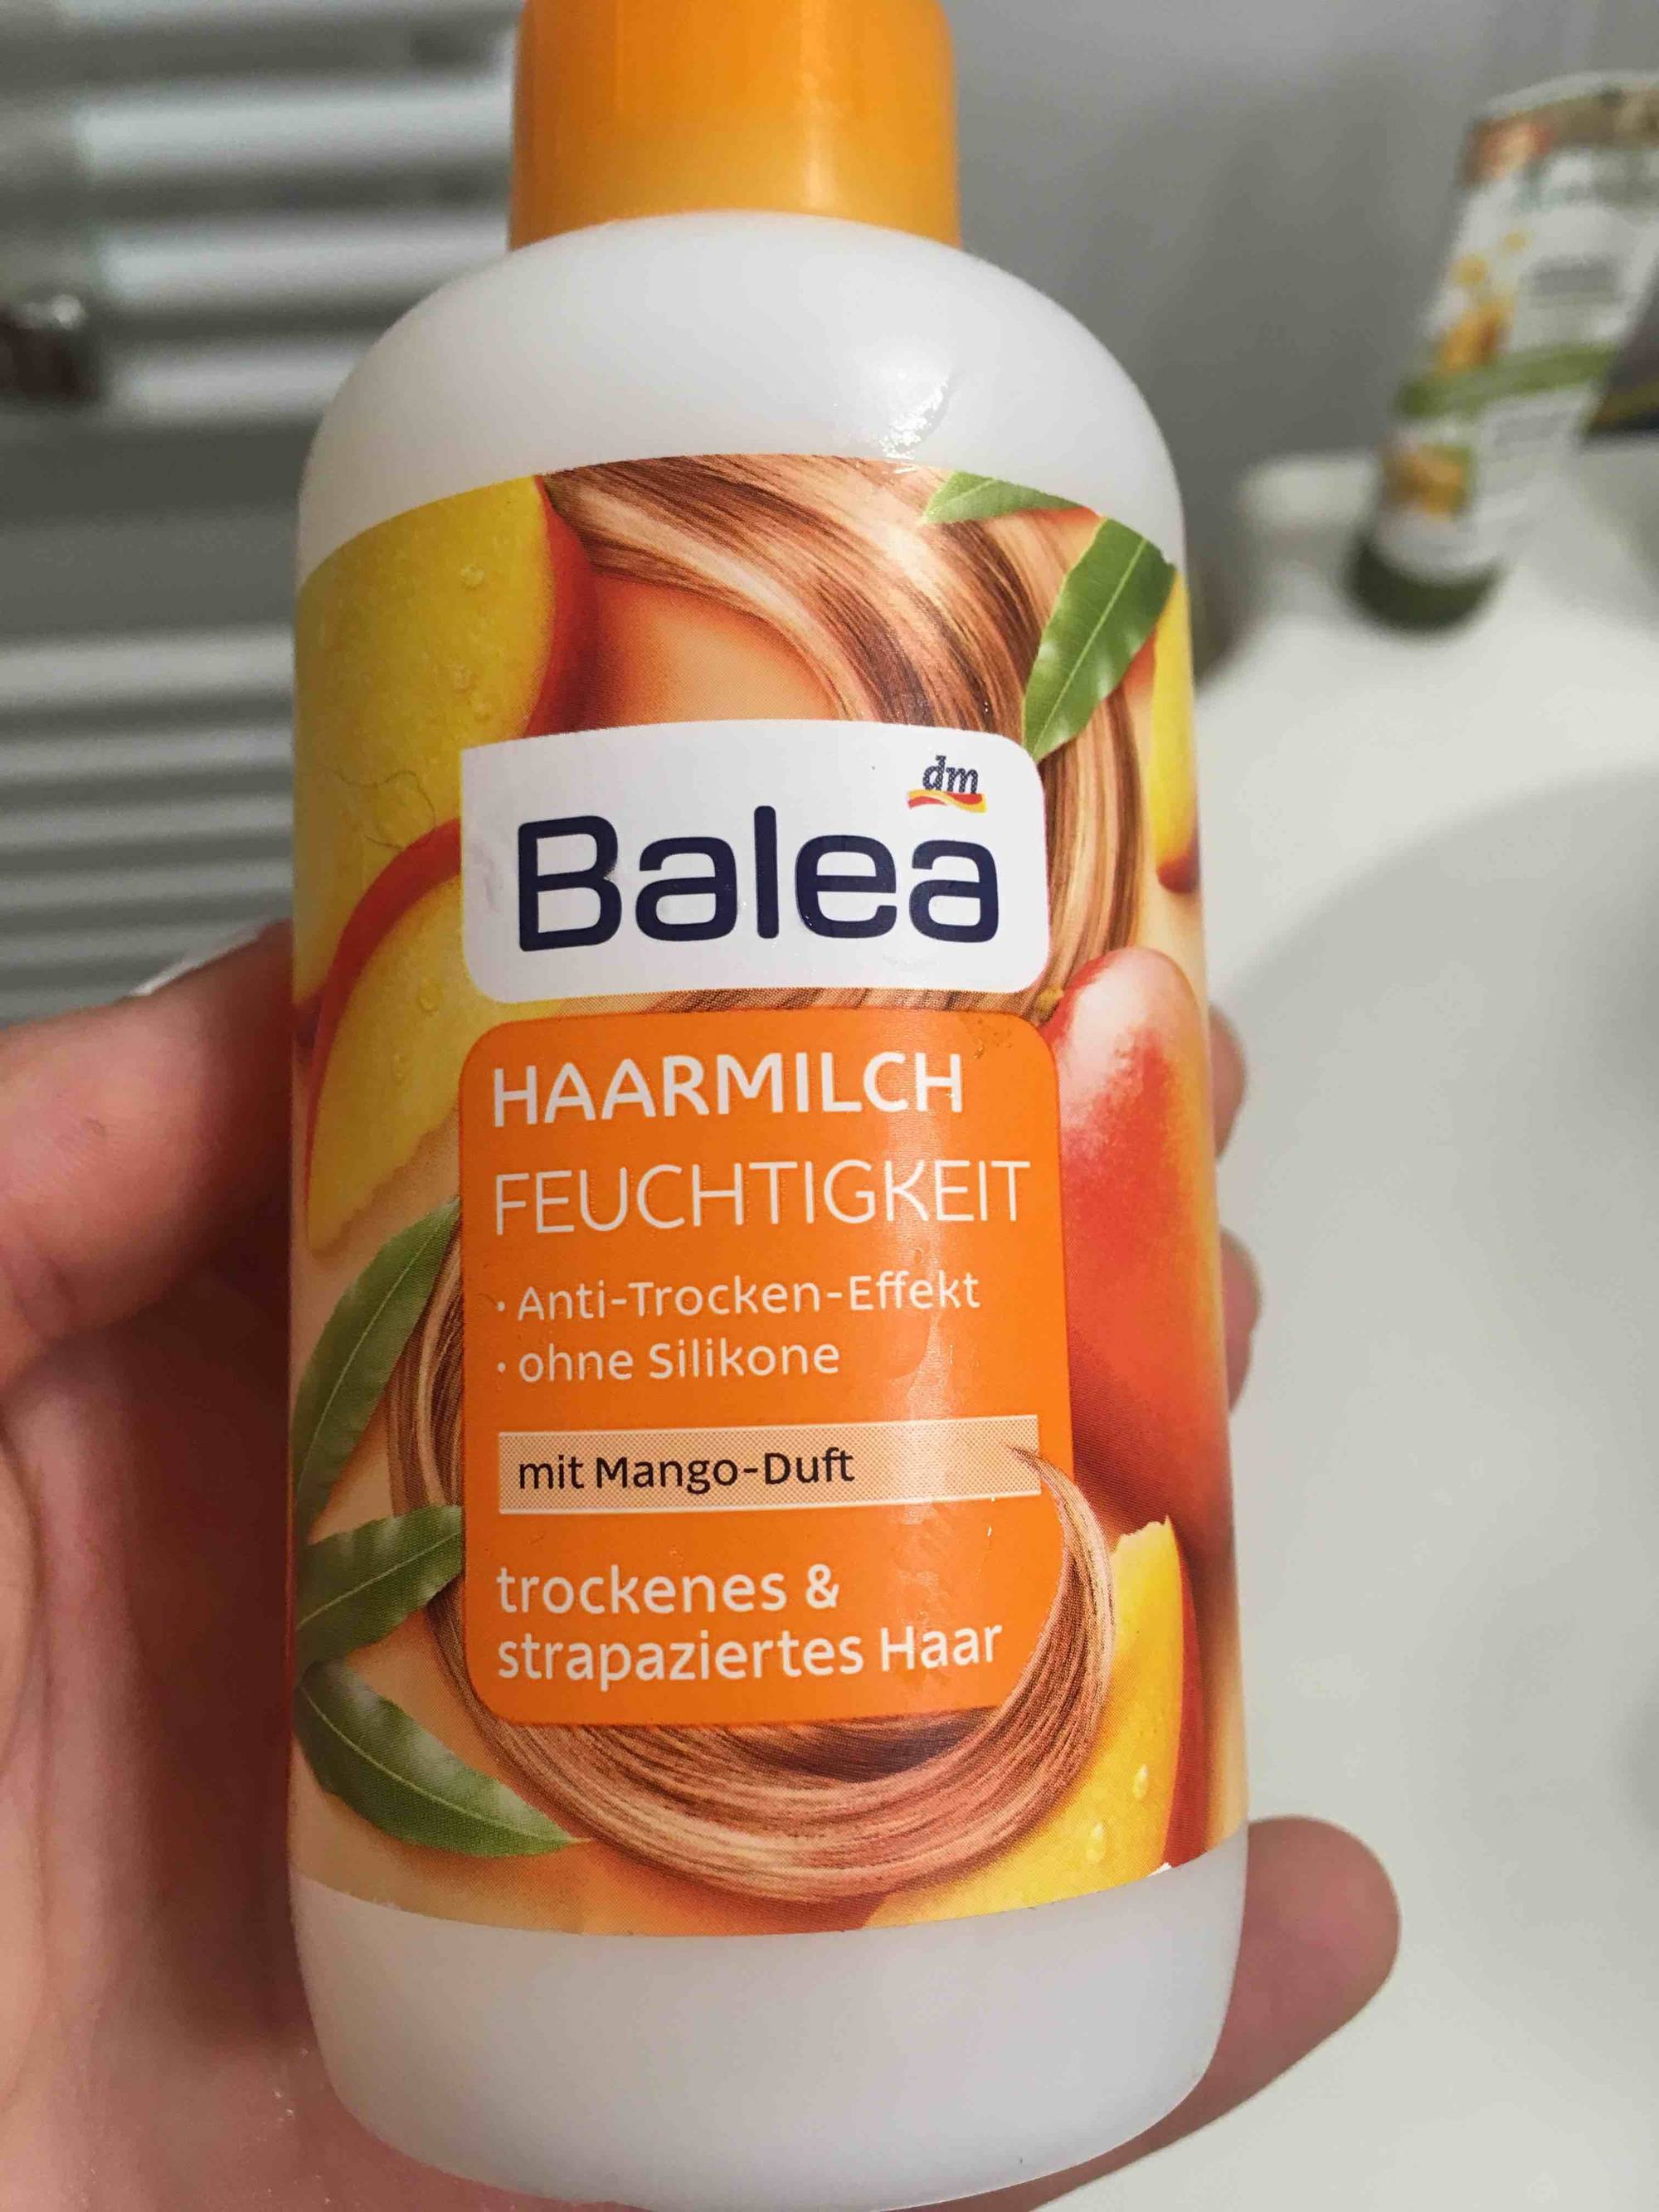 DM - Balea - Haarmilch feuchtigkeit mit mango-duft